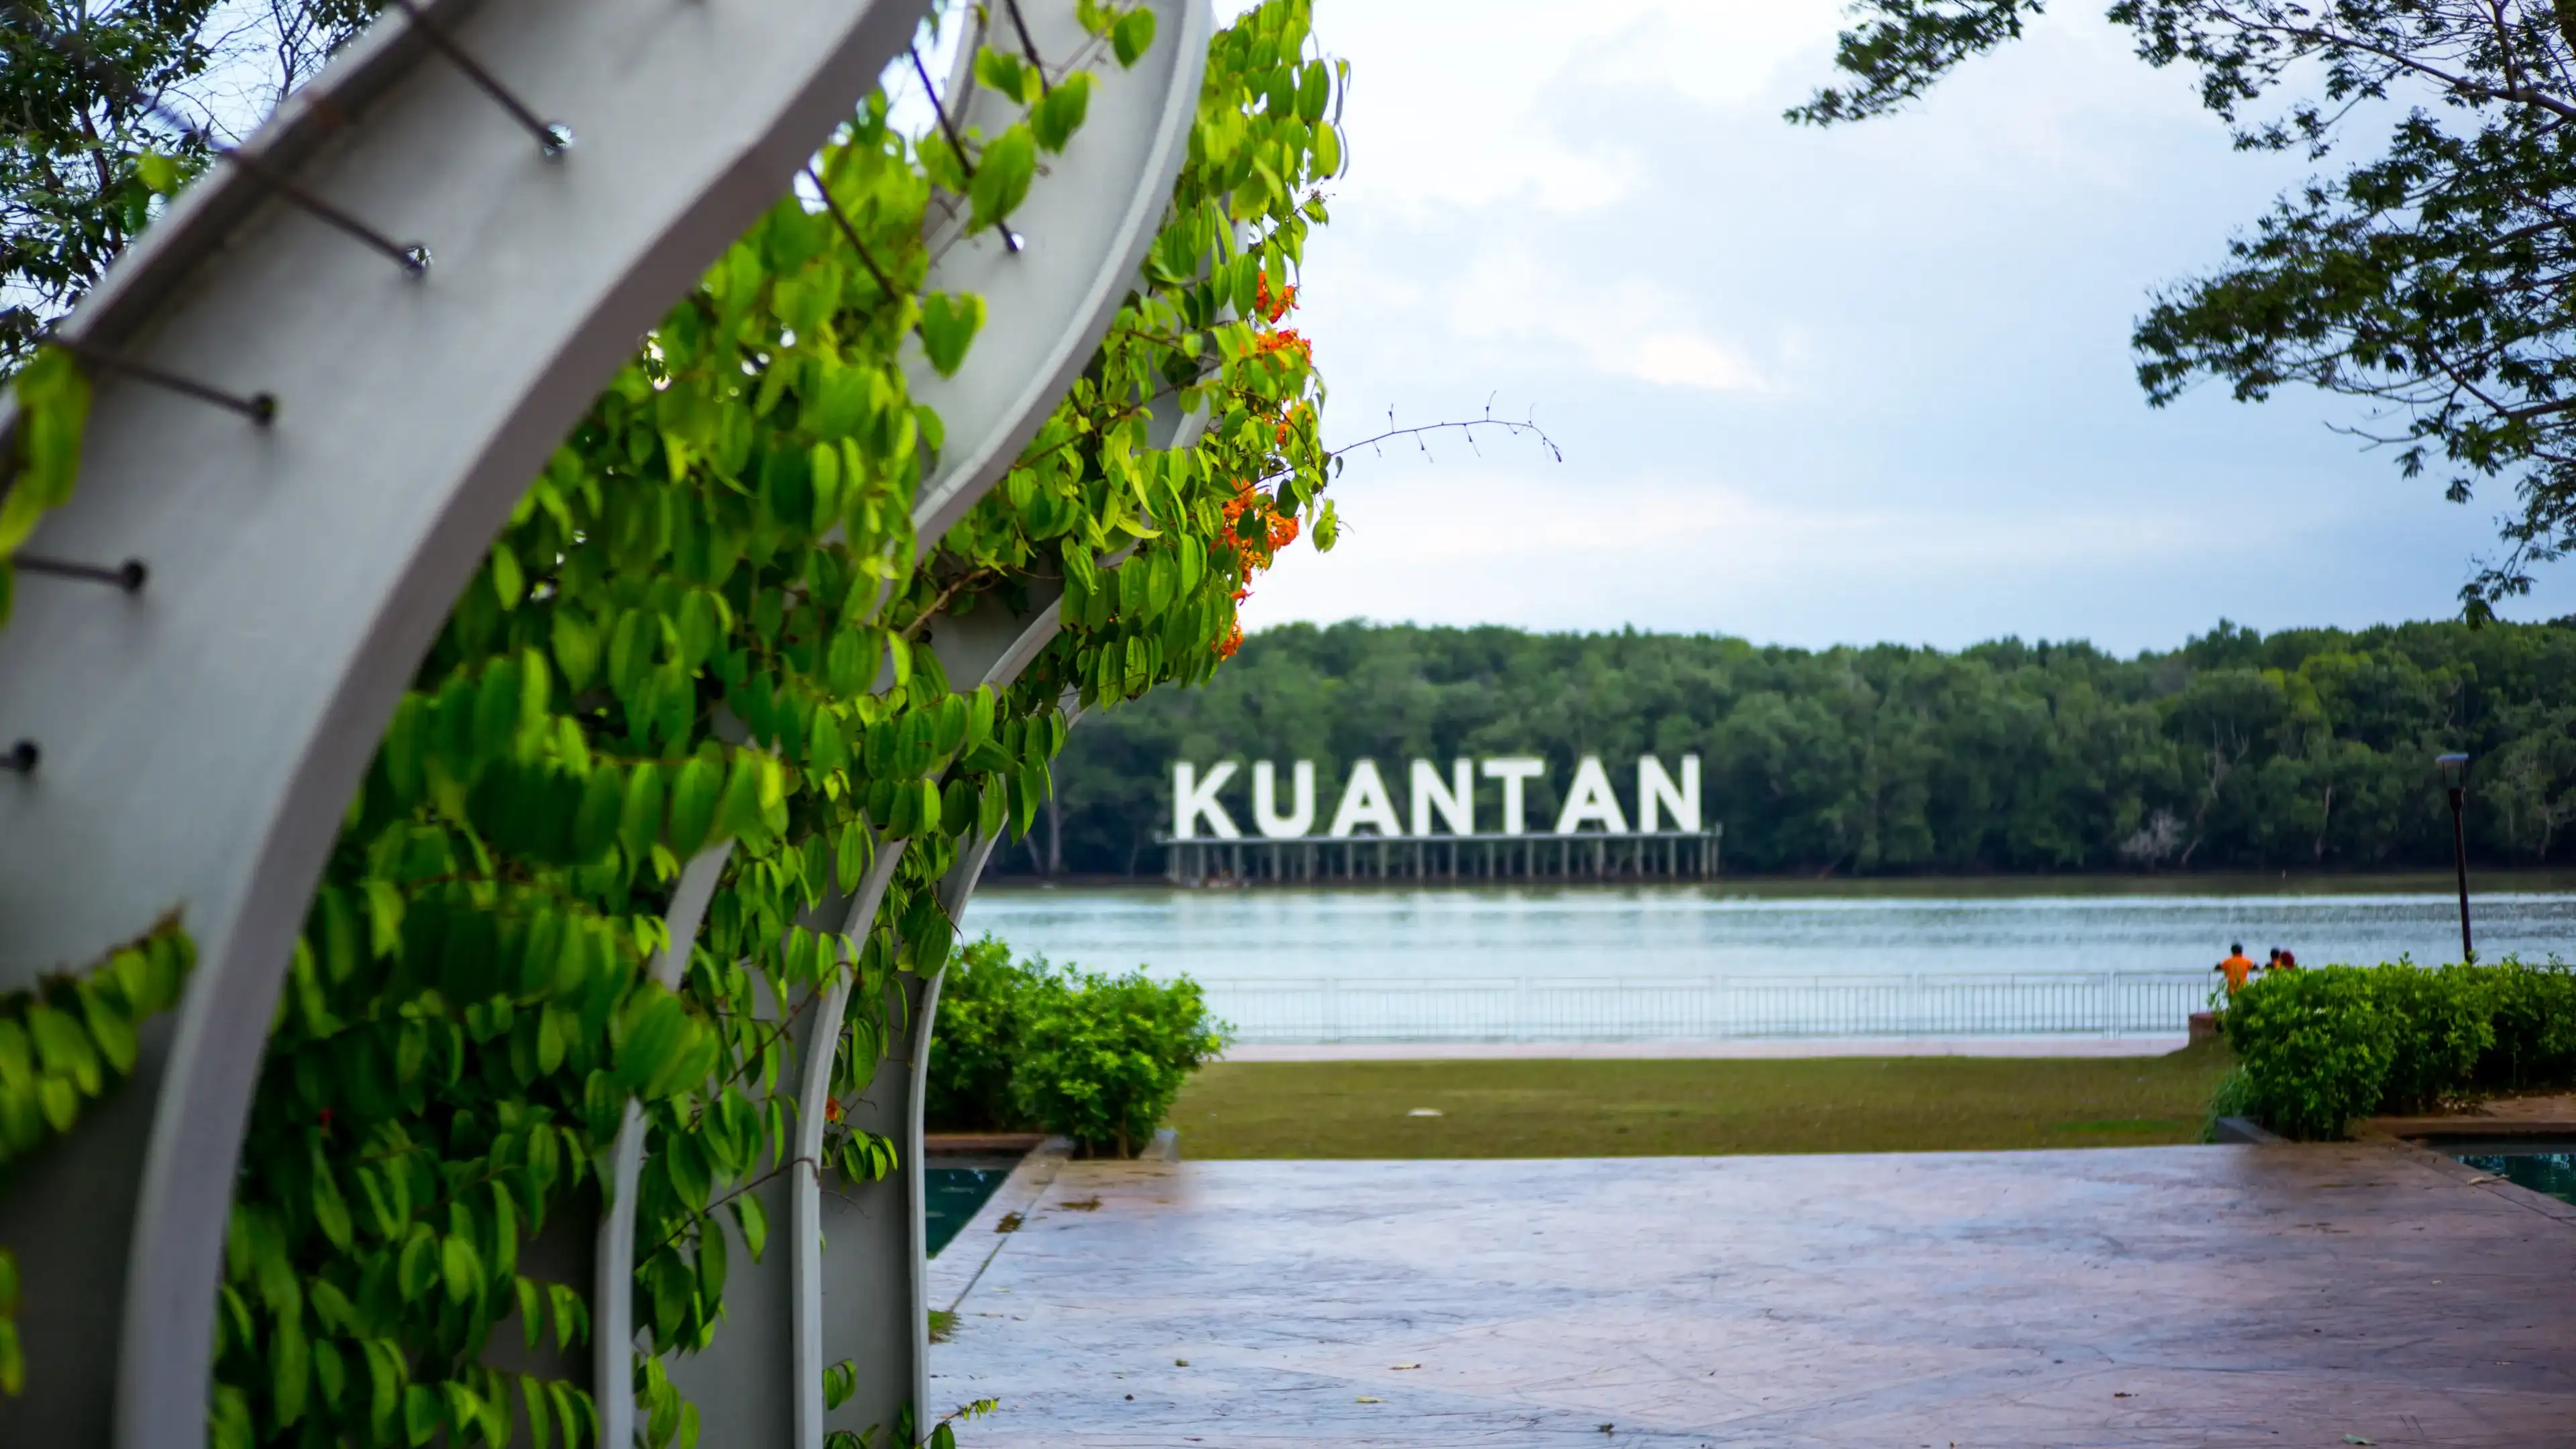 KUANTAN, MALAYSIA - May 13, 2017 : The river side view city of Kuantan, Pahang, Malaysia.